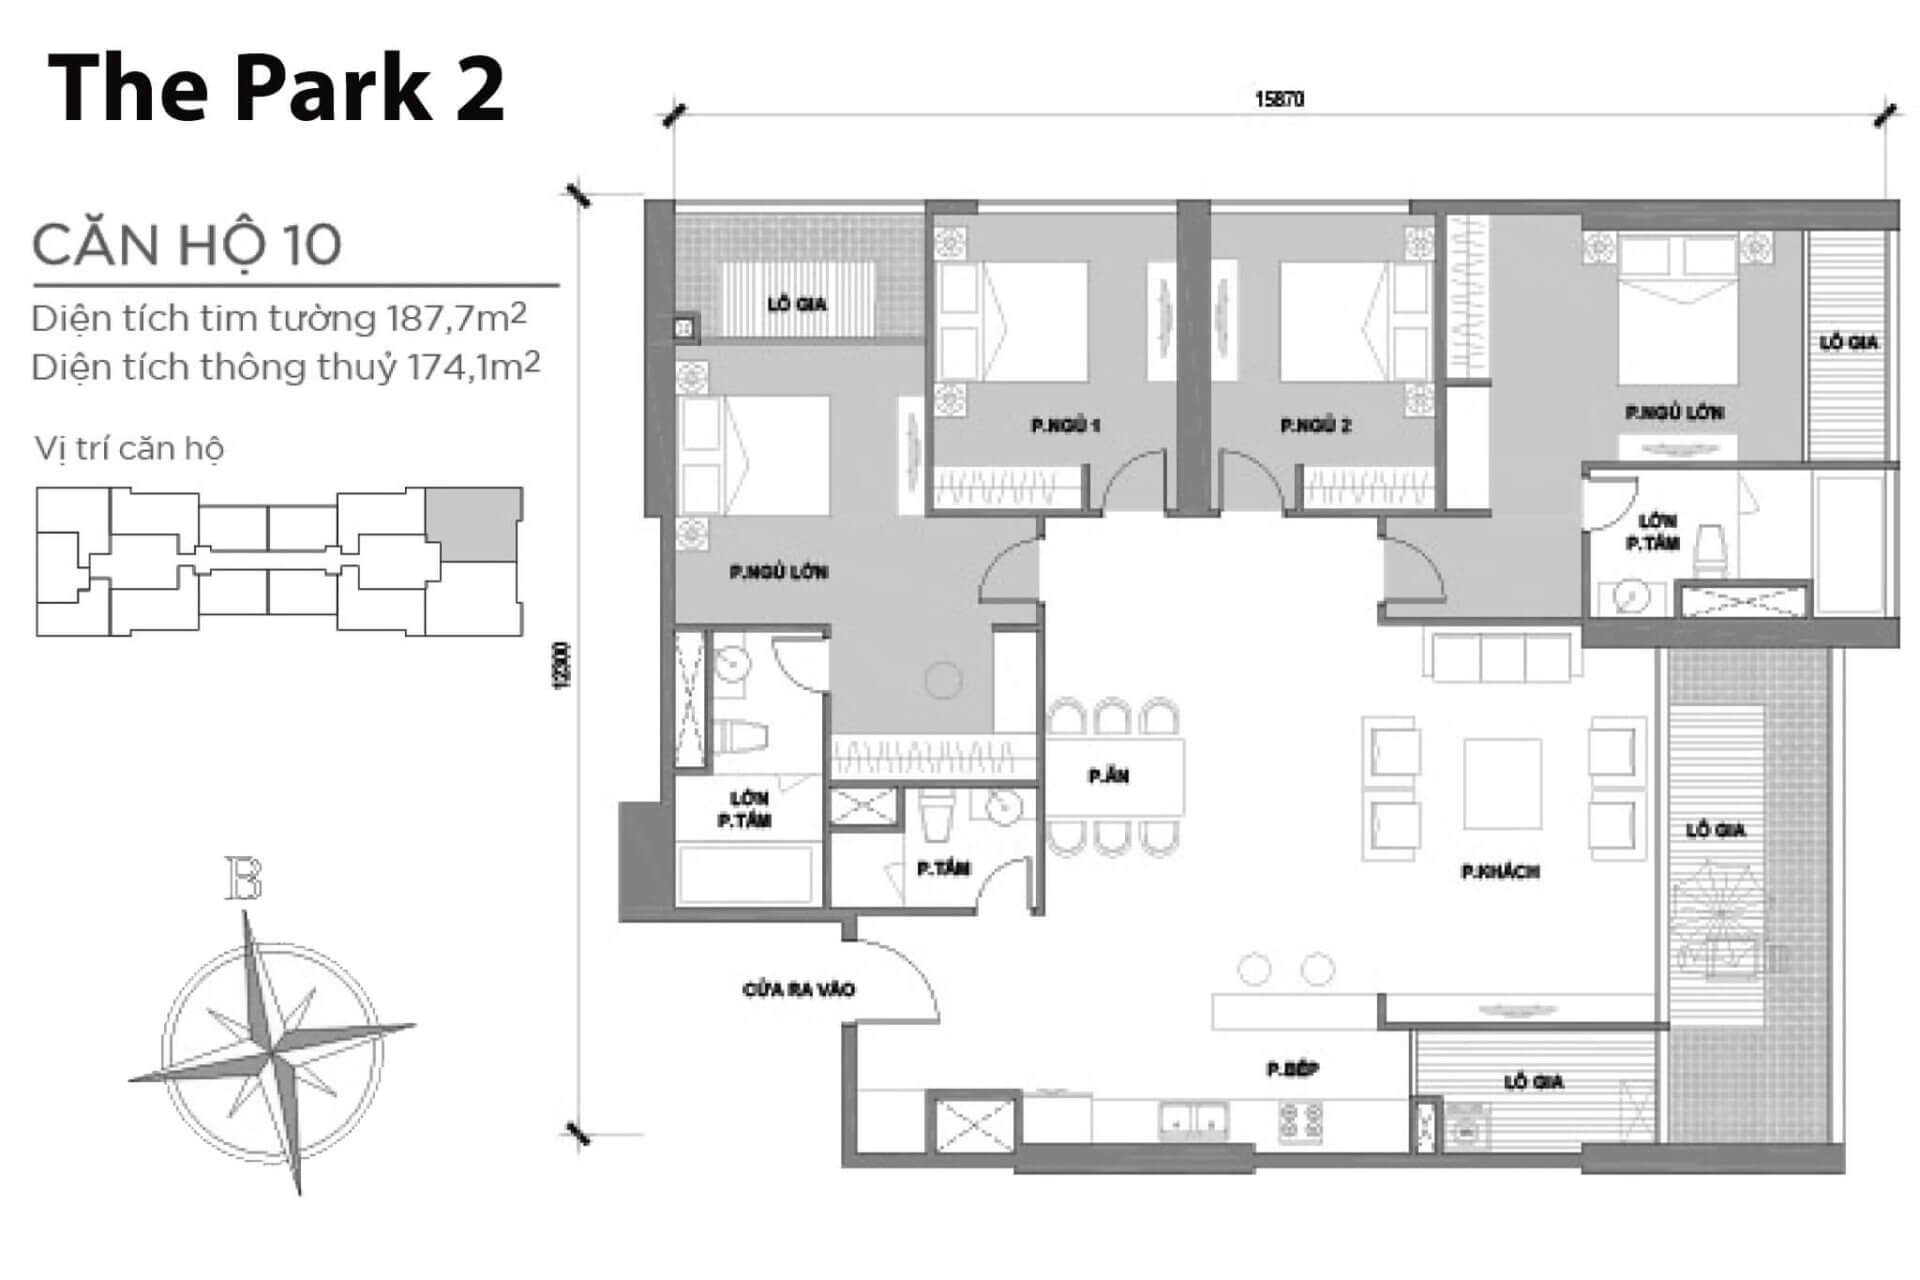 mặt bằng layout căn hộ số 10 Park 2 Vinhomes Central Park